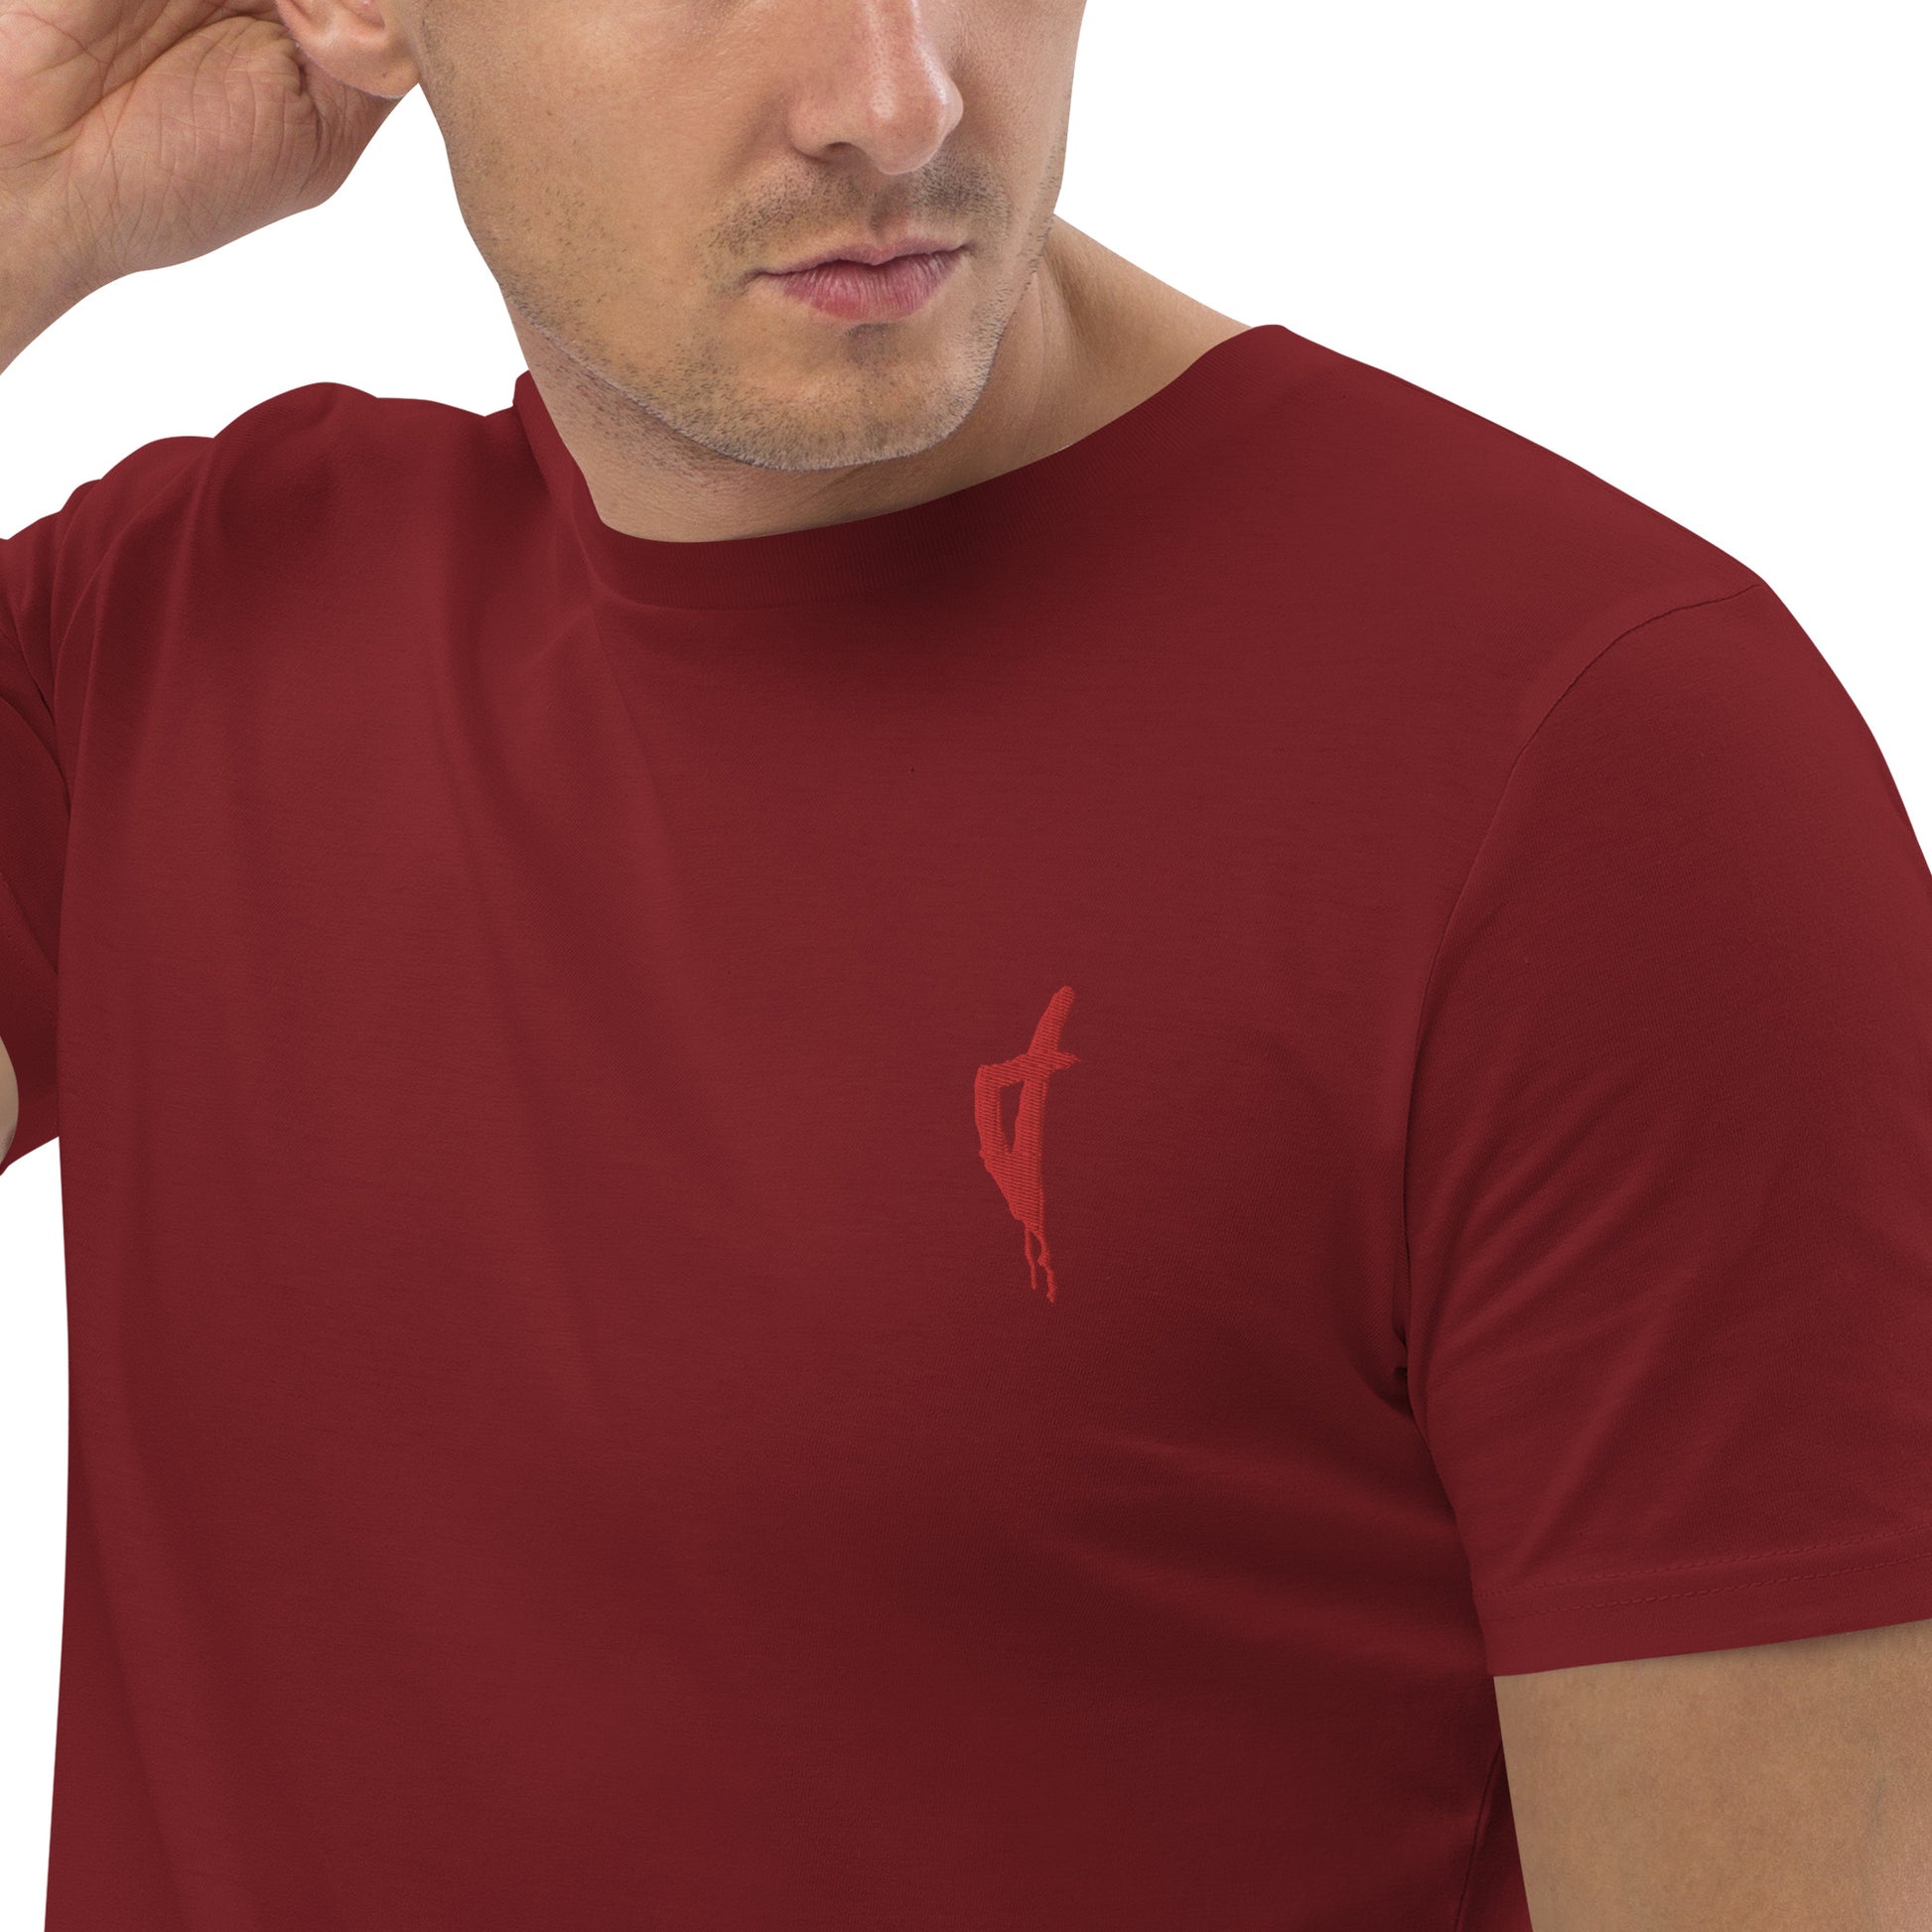 T-shirt unisexe en coton bio Corse Rouge - Ochju Ochju Burgundy / S Ochju T-shirt unisexe en coton bio Corse Rouge